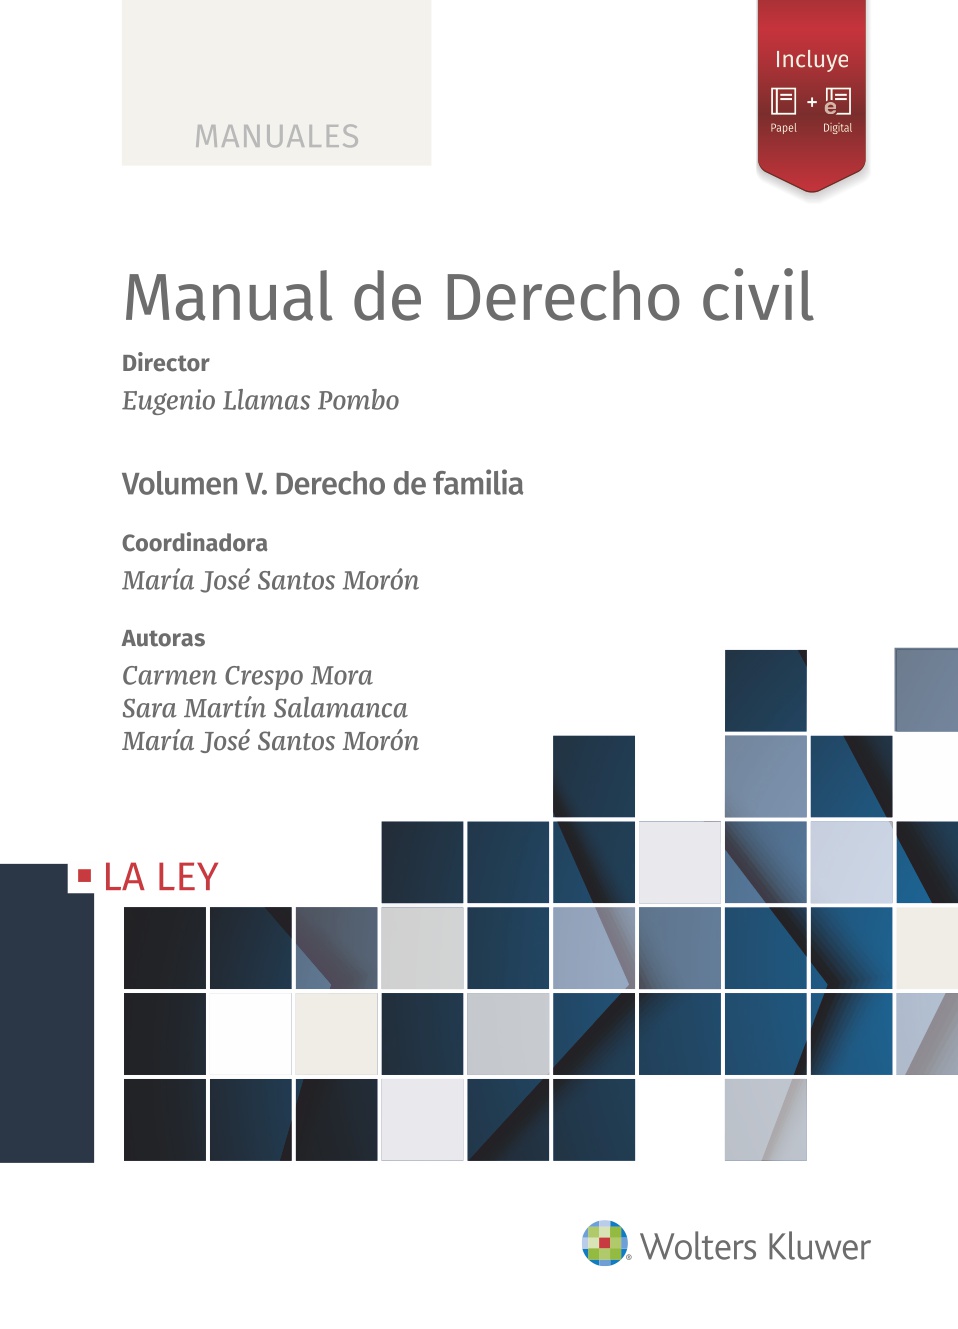 MANUAL DE DERECHO CIVIL VOLUMEN 5 DERECHO DE FAMILIA